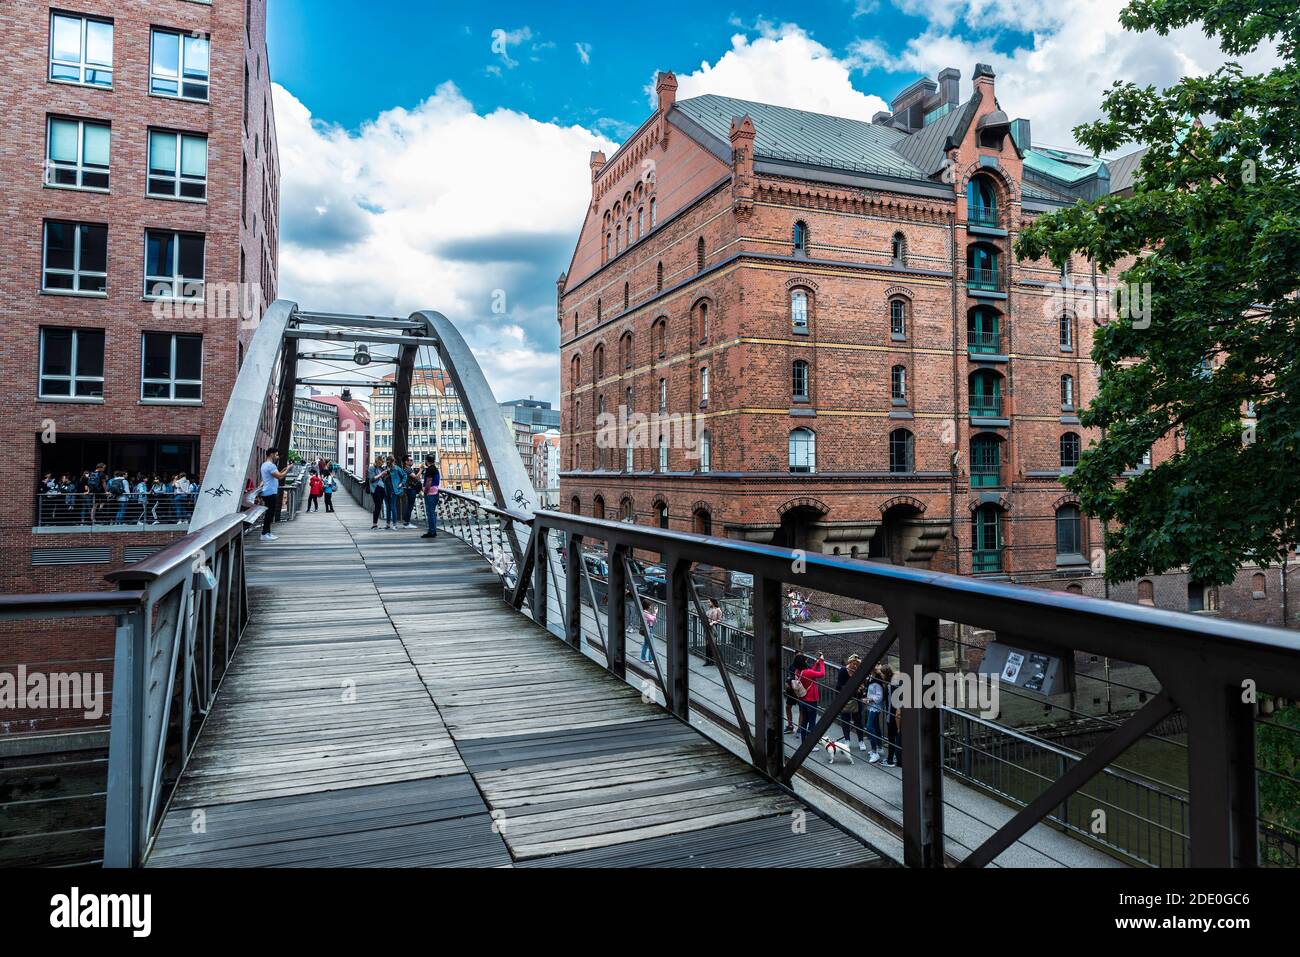 Hamburg, Deutschland - 21. August 2019: Fußgängerbrücke über einen Kanal mit Menschen und einem alten klassischen Lagerhaus in der HafenCity, Hamburg, Deutschland Stockfoto